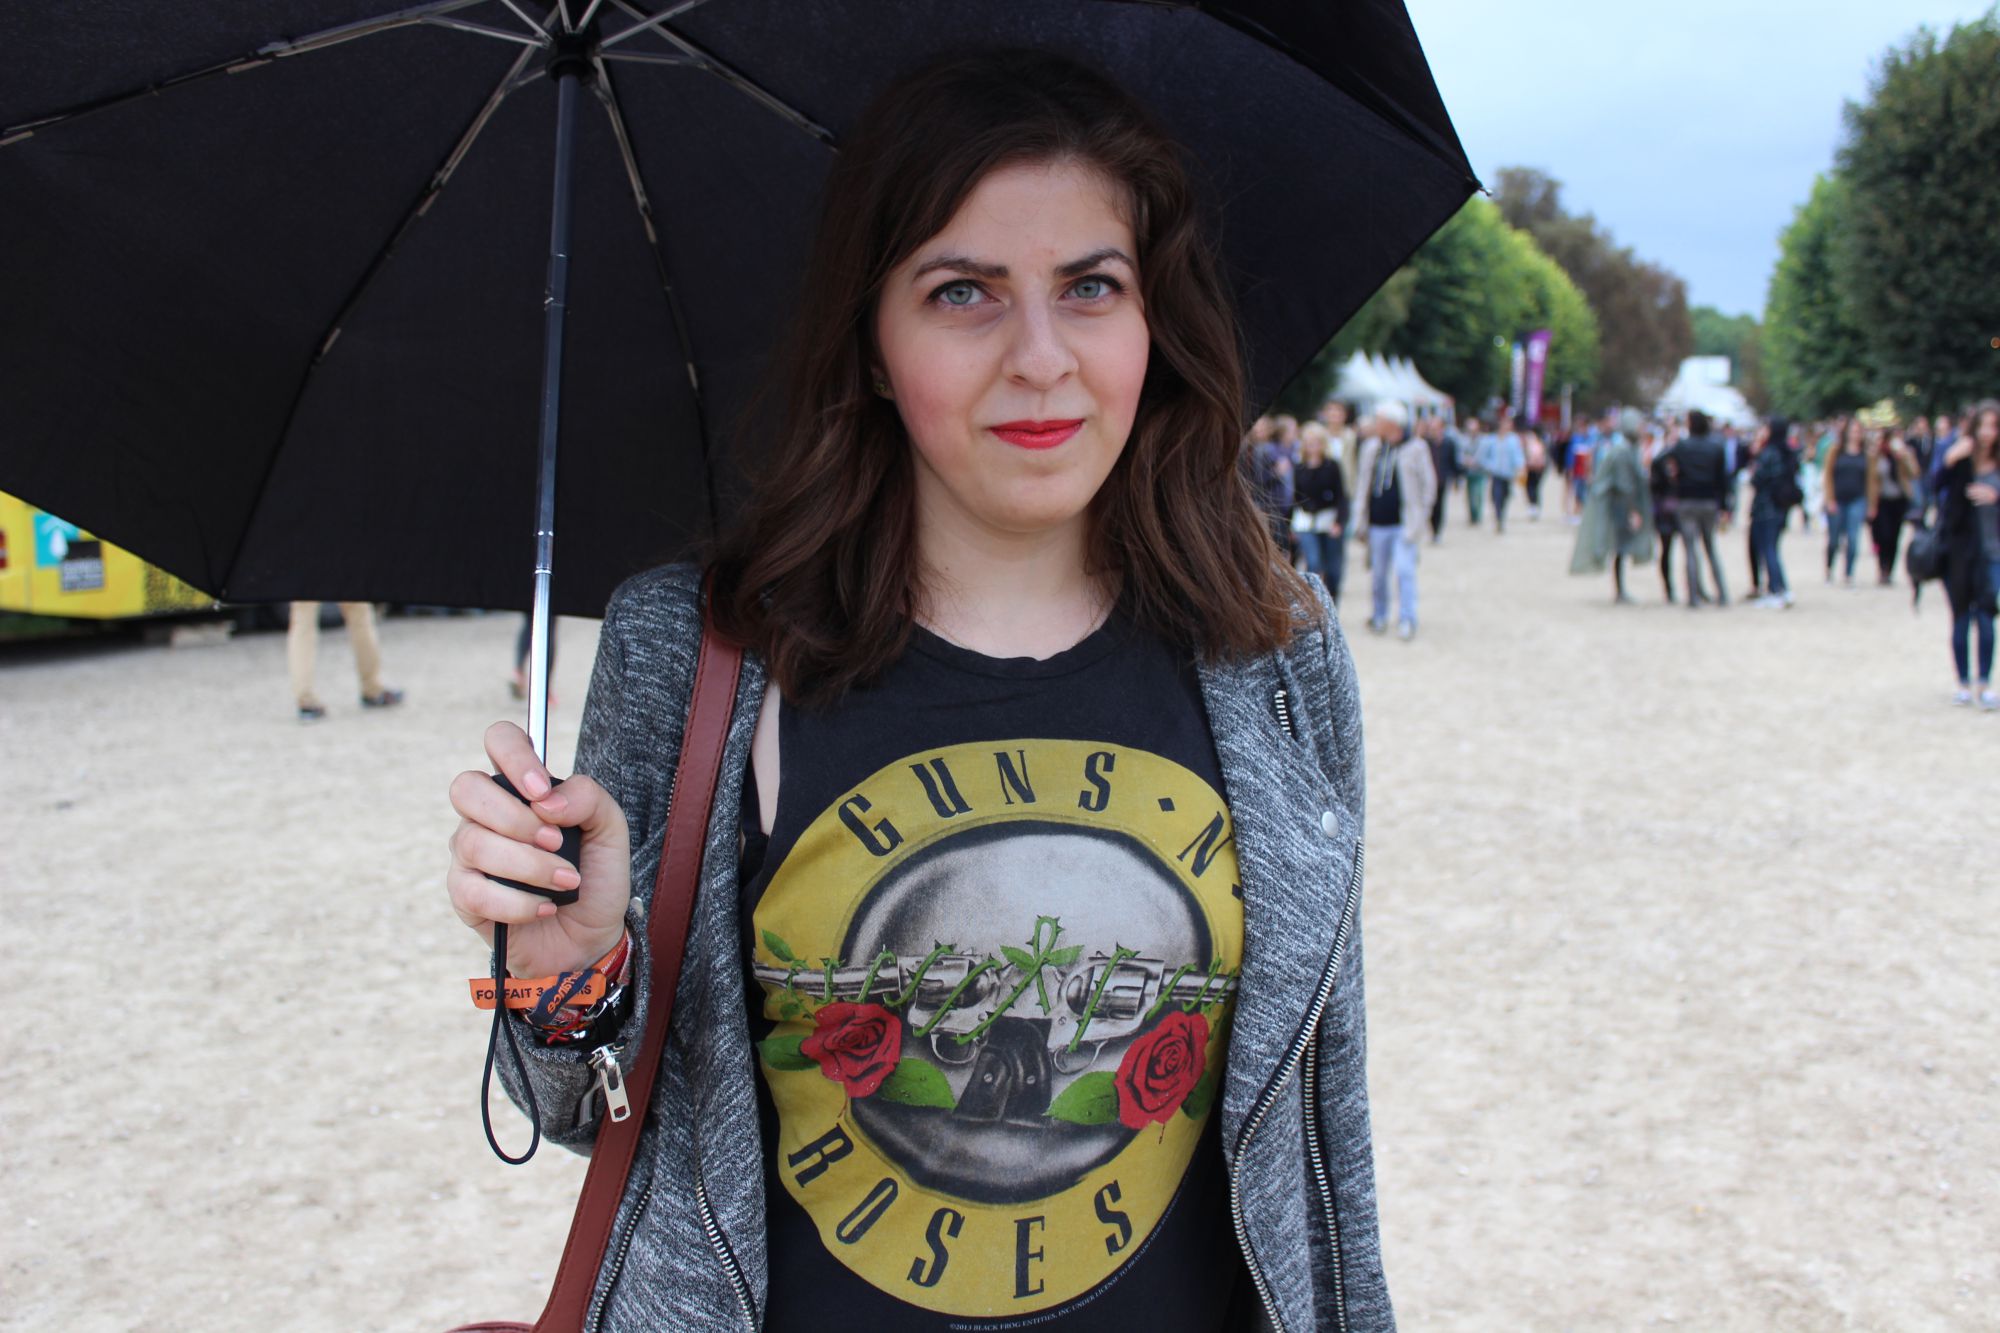 Rock en Seine 2014 : les looks des festivalier (Photo 3)